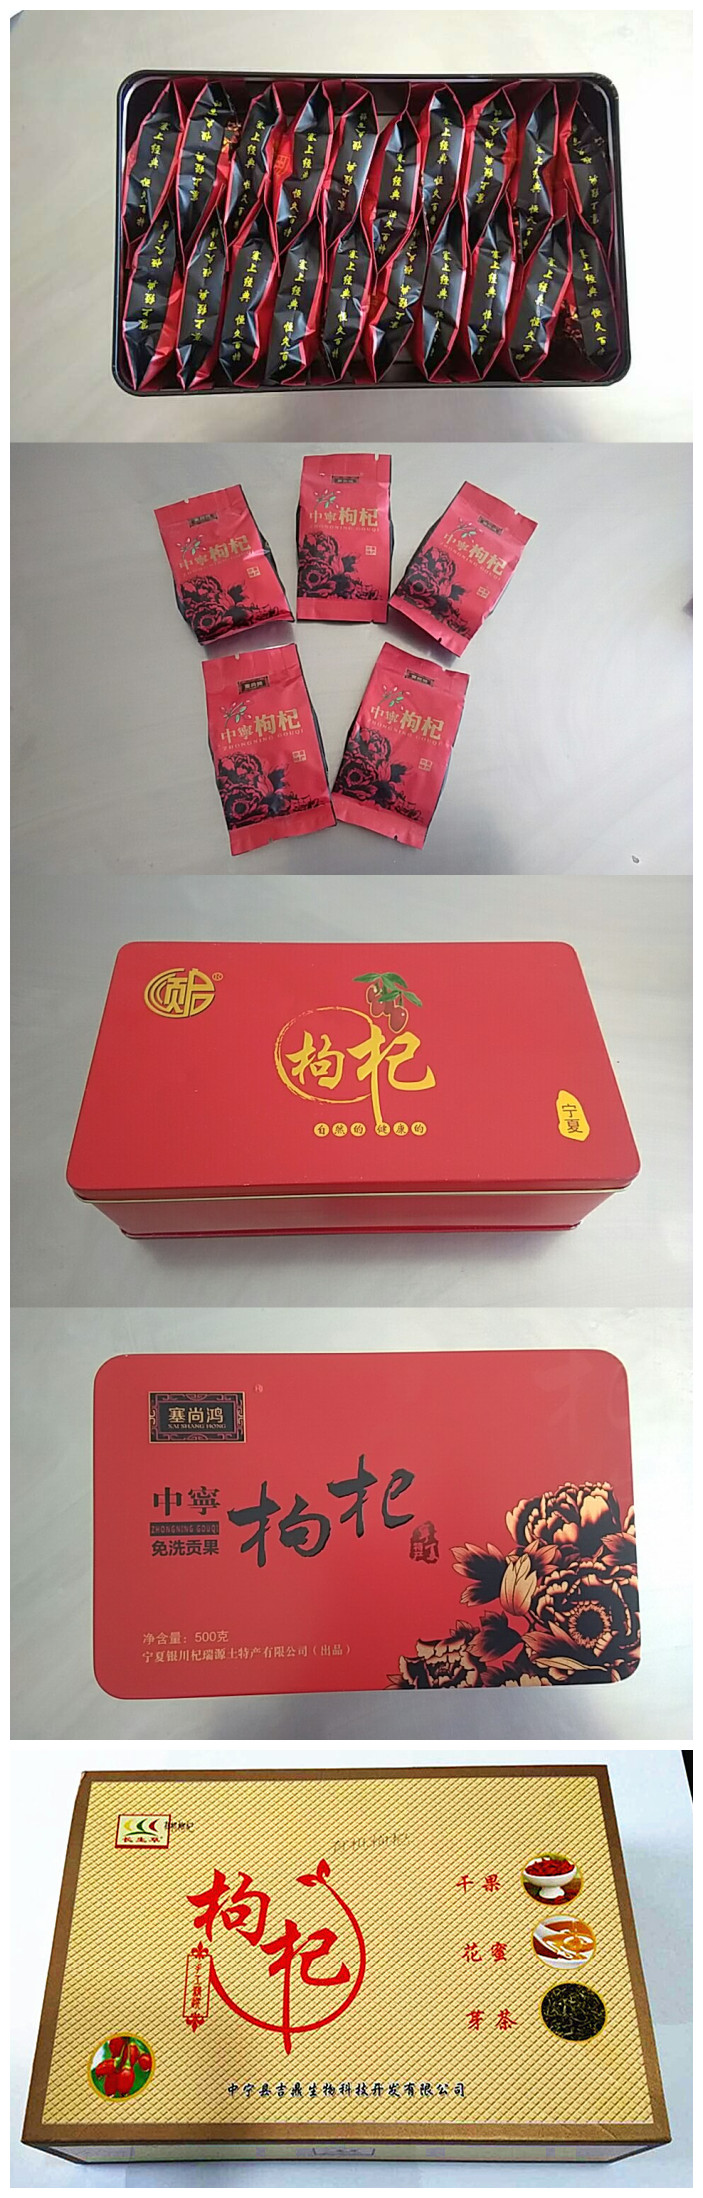 Goji Berry Gift Box